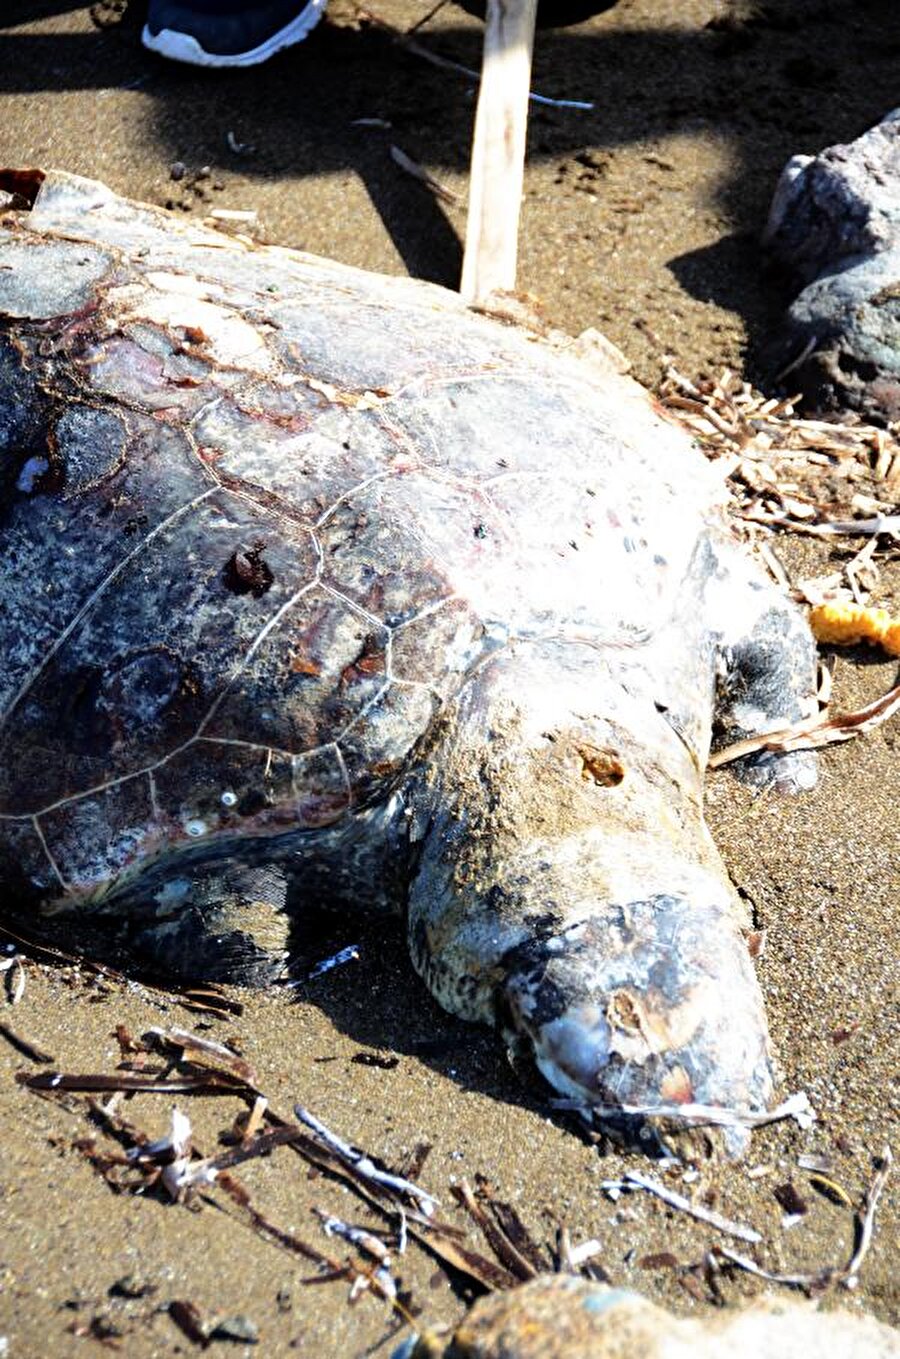 "Bu bir vahşet"

                                    
                                    
                                    
                                    Jandarma, nesli tükenmekte olan türler arasında olan Caretta caretta'nın kurşunlanarak öldürülmesiyle ilgili soruşturma başlatırken, AKUT Bodrum ekibi de Ortaca İlçesi, Dalyan Mahallesi'ndeki Deniz Kaplumbağaları Araştırma Kurtarma ve Rehabilitasyon Merkezi (DEKAMER) ile irtibata geçti.Telef edilen deniz kaplumbağasının incelenmek üzere DEKAMER'e teslim edileceği bildirildi. Koyunbaba Mahallesi Muhtarı Yılmaz Çincik, "Bu bir vahşet. Bunu yapanlar insan olamaz. Sorumlularının bir an önce bulunup, hak ettikleri cezanın verilmesini istiyoruz" dedi. 
                                
                                
                                
                                